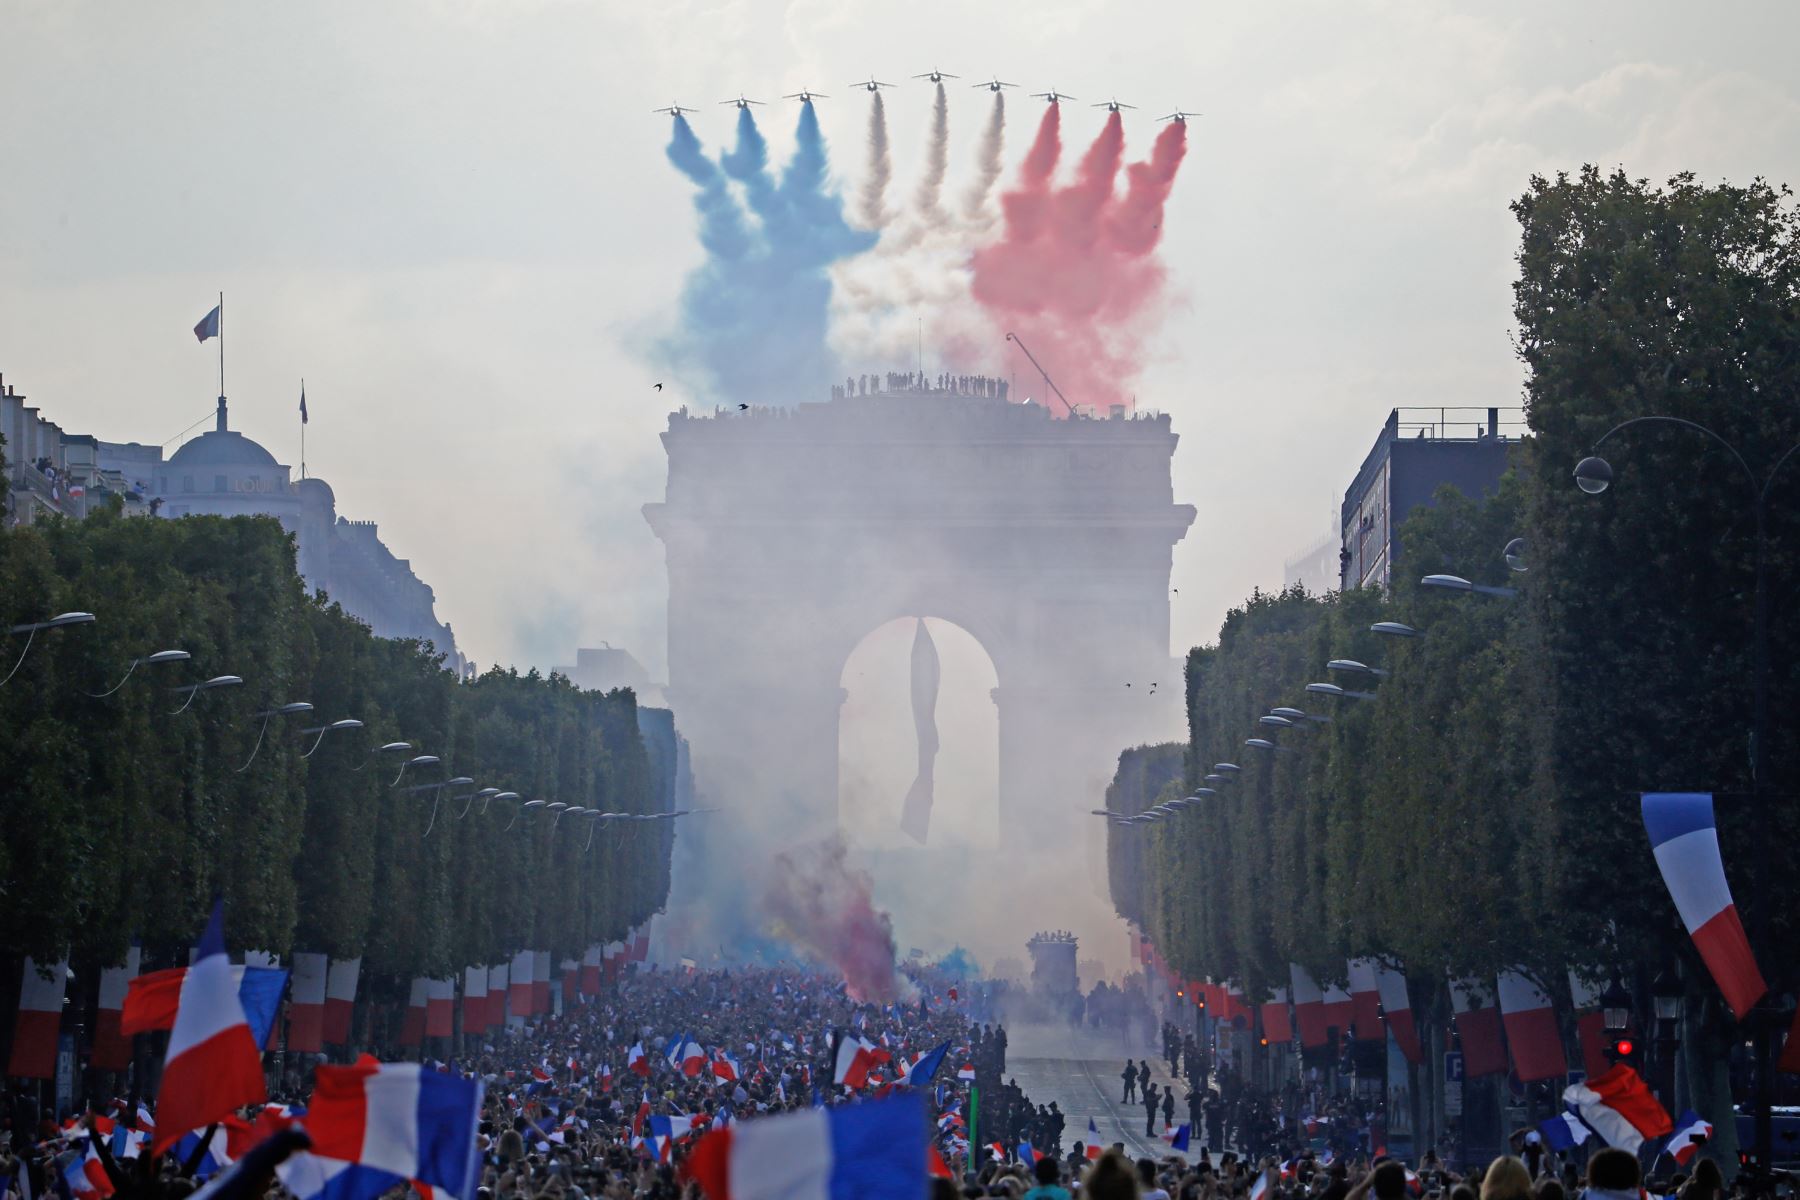 Los jets Patrouille de France, trailing humo en los colores de la bandera nacional, sobrevolar la avenida Champs Elysee y el Arco del Triunfo como partidarios de la bienvenida a los jugadores de la selección francesa de fútbol después de que ganaron la Copa del Mundo Rusia 2018 partido final de fútbol en Paris. AFP